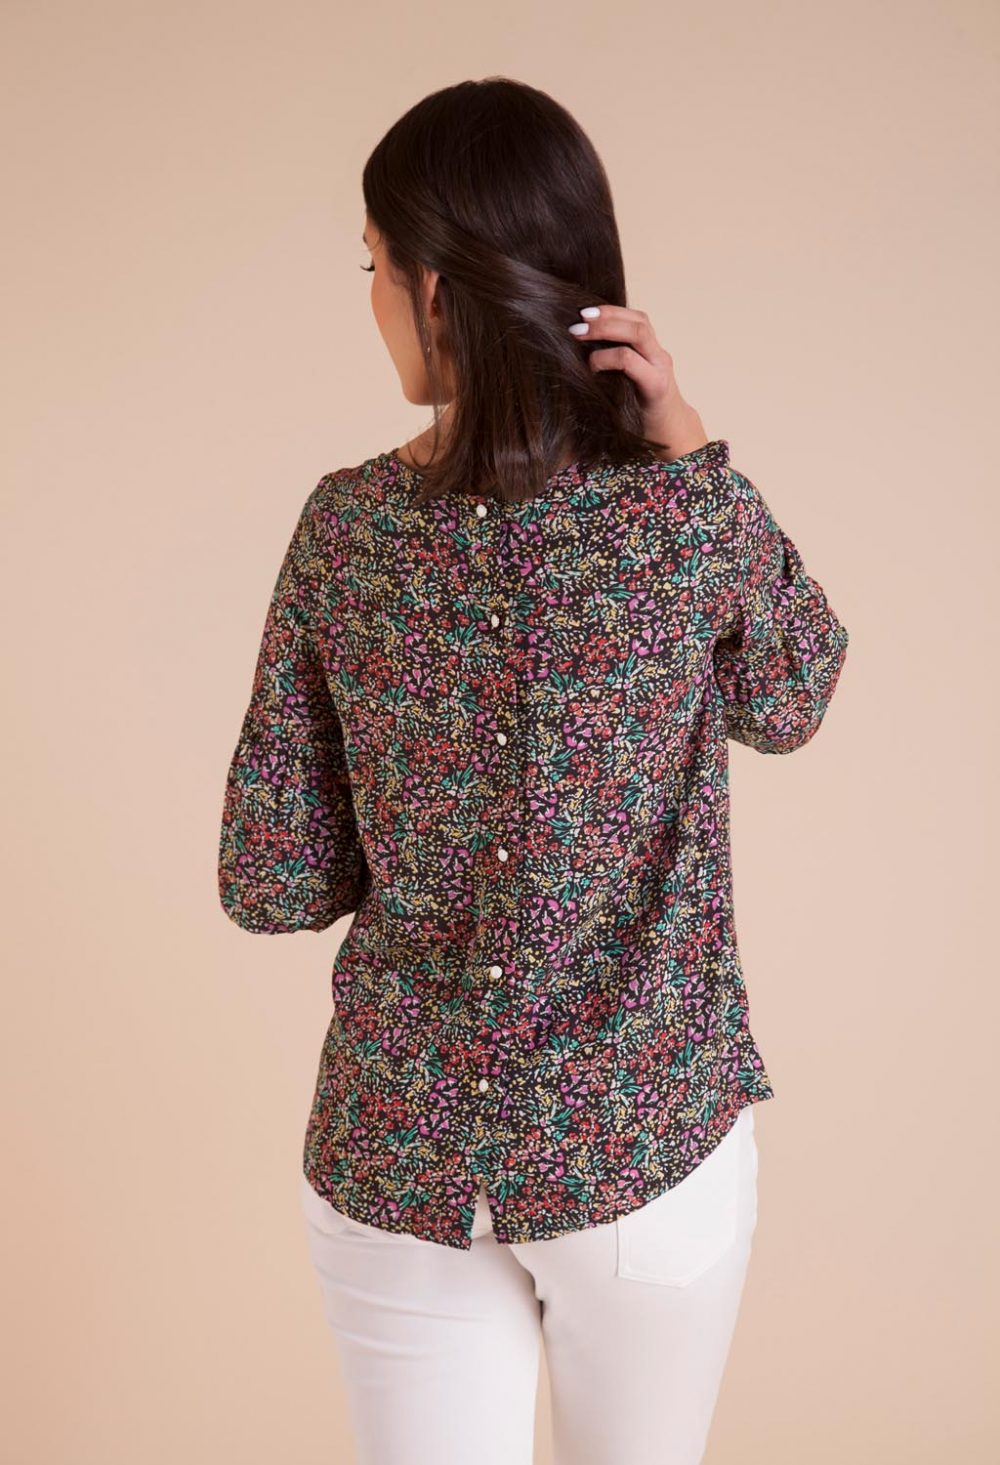 blouse femme colorée et légère made in France